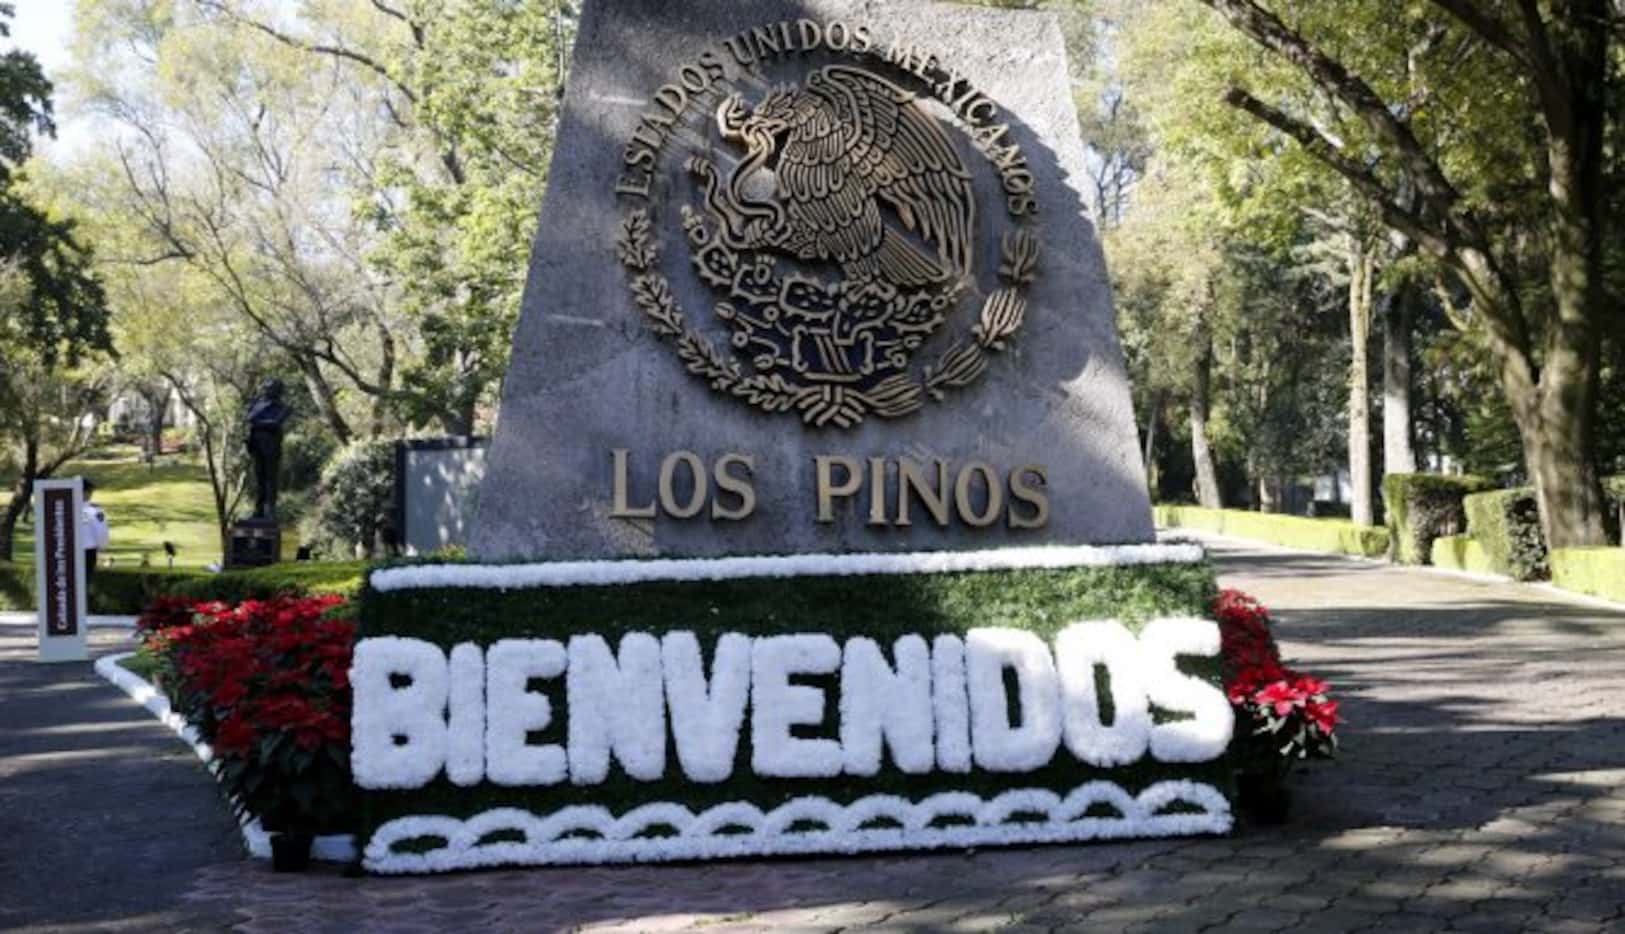 
				La entrada al complejo de la residencia de Los Pinos, en el Bosque de Chapultepec, en...